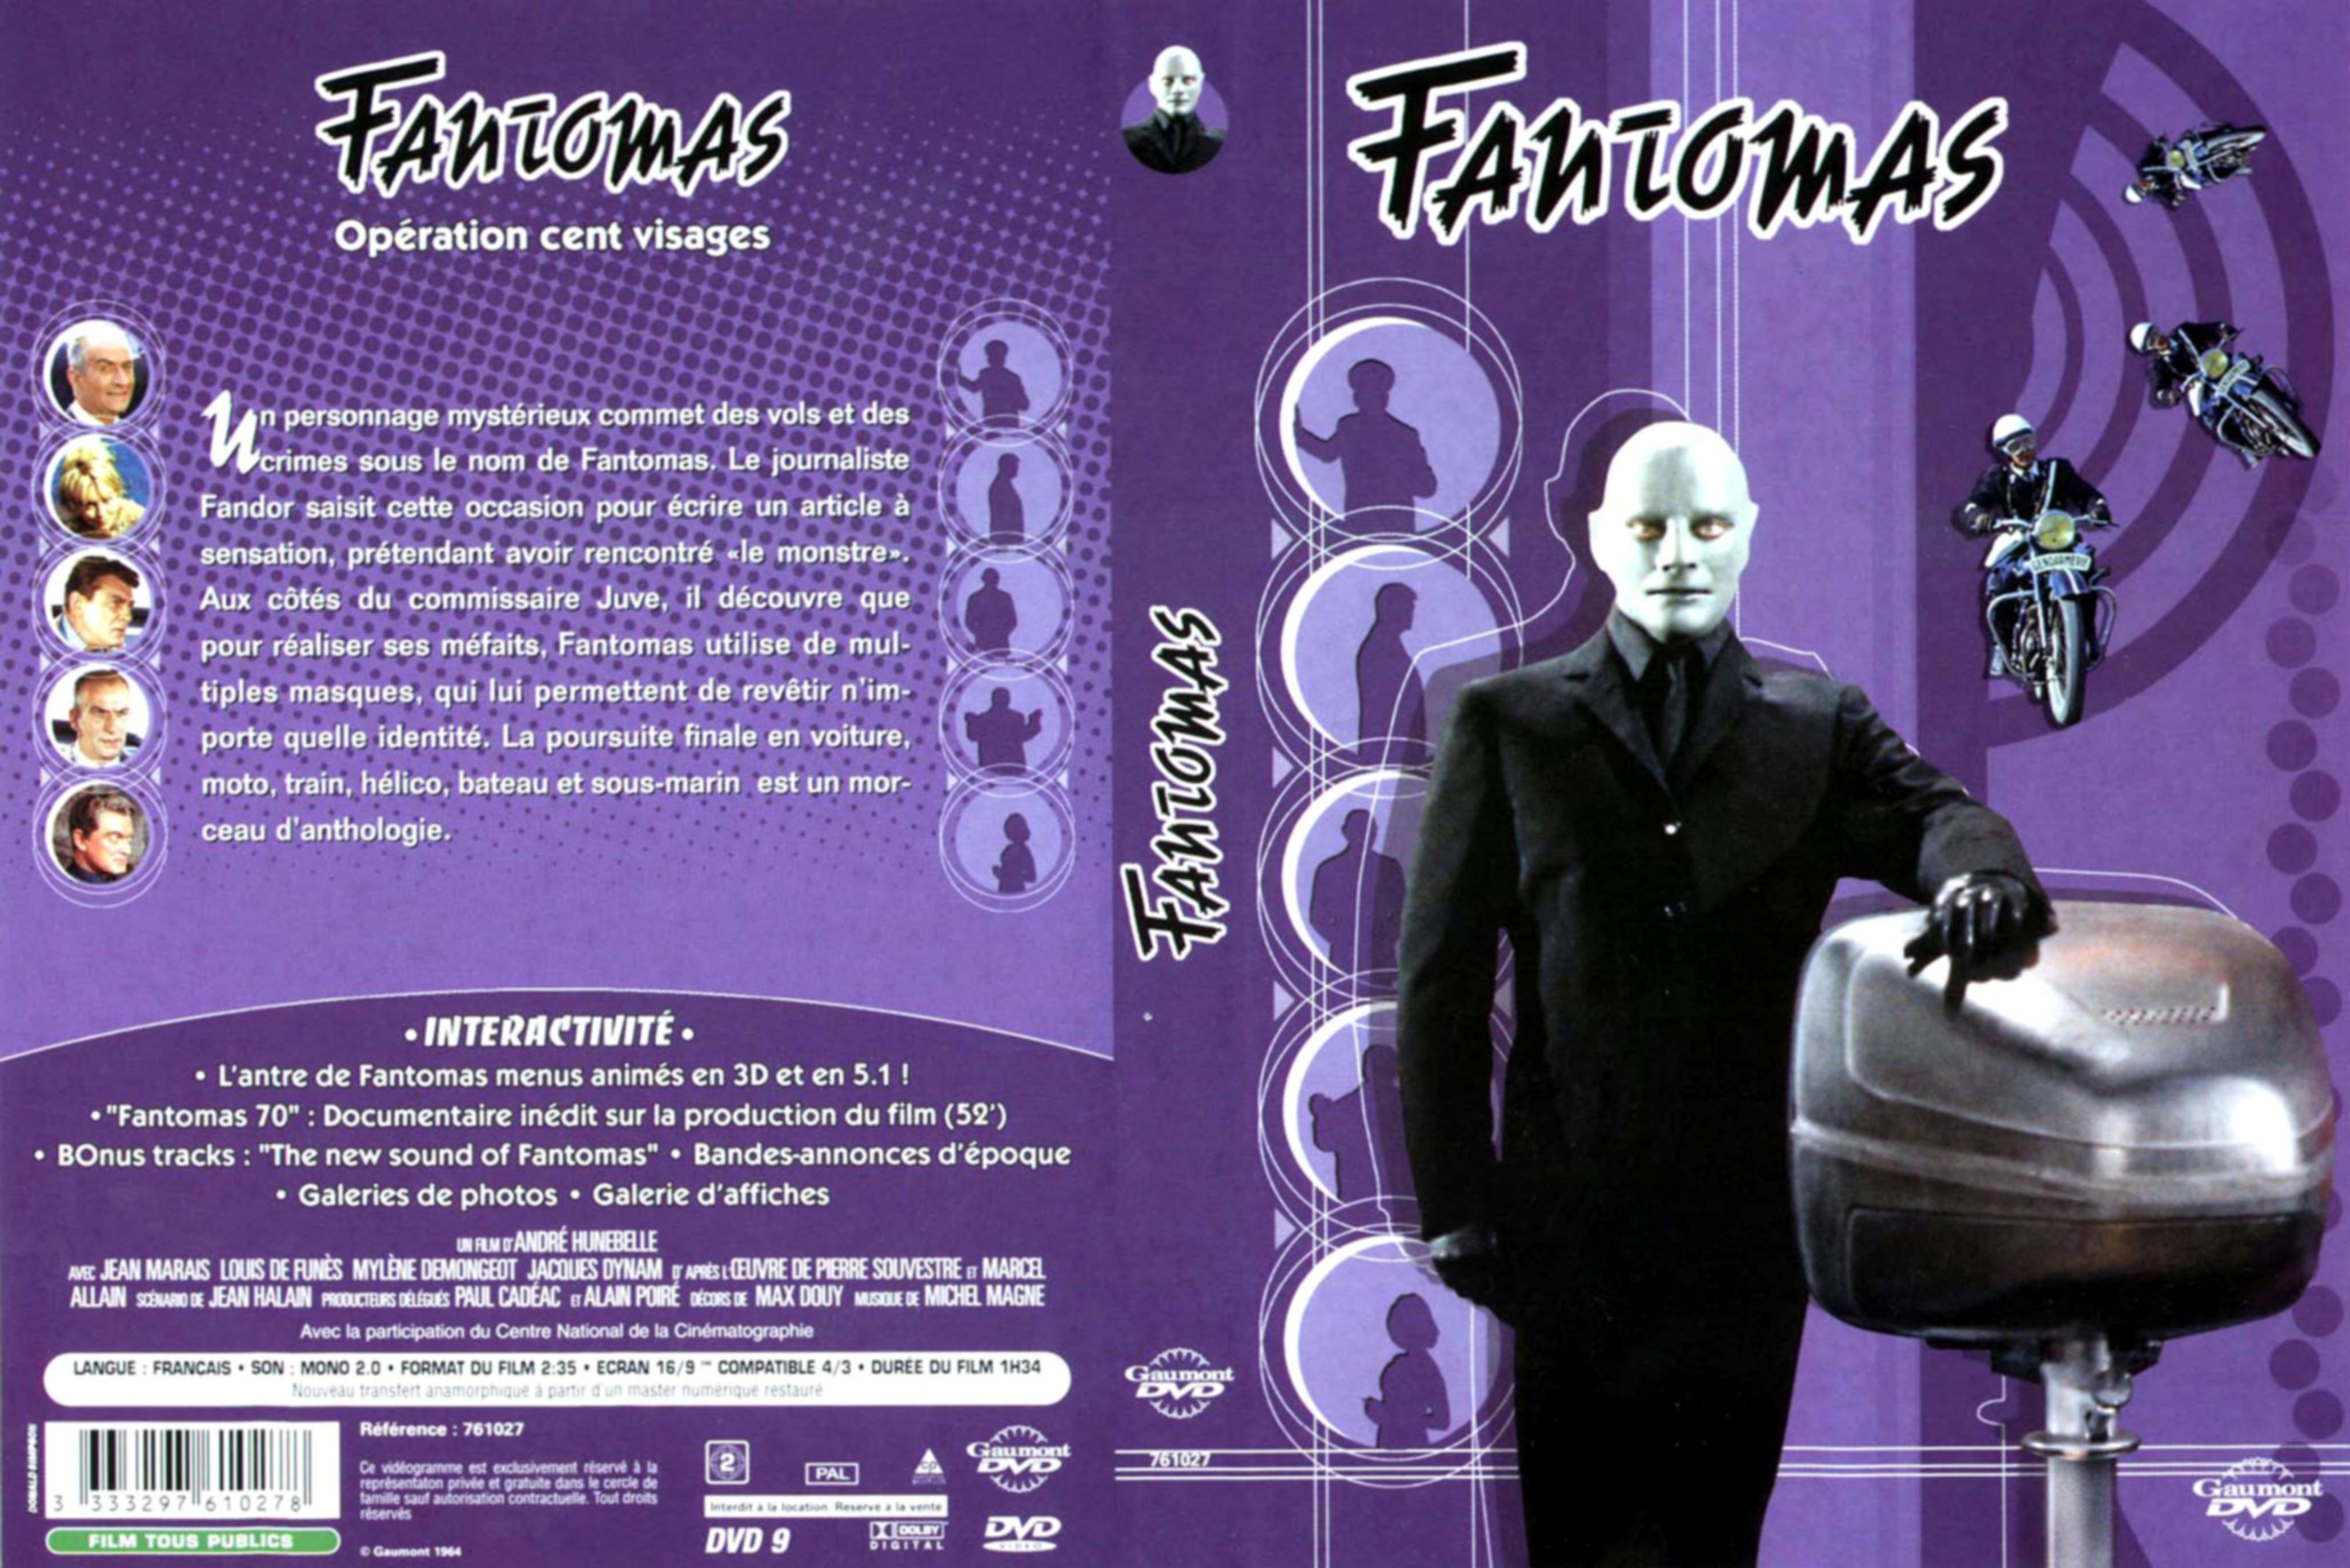 Jaquette DVD Fantomas Operation cent visages